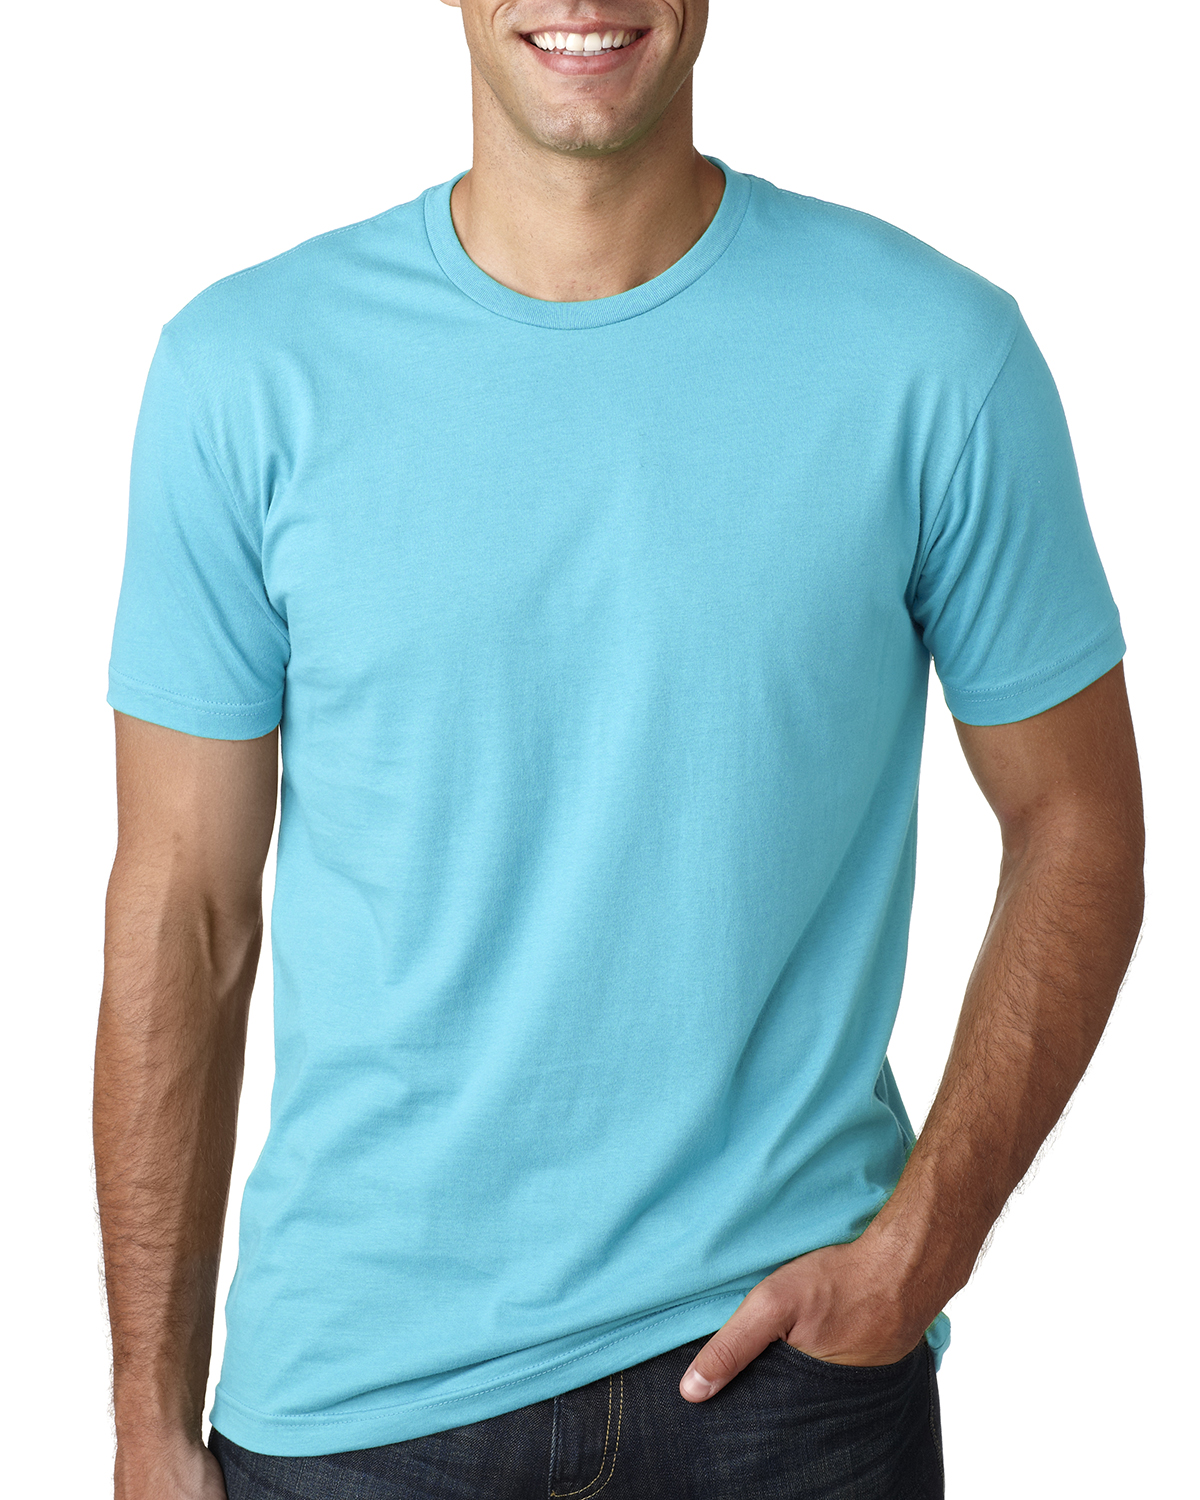 3600  Next Level Unisex Cotton T-Shirt